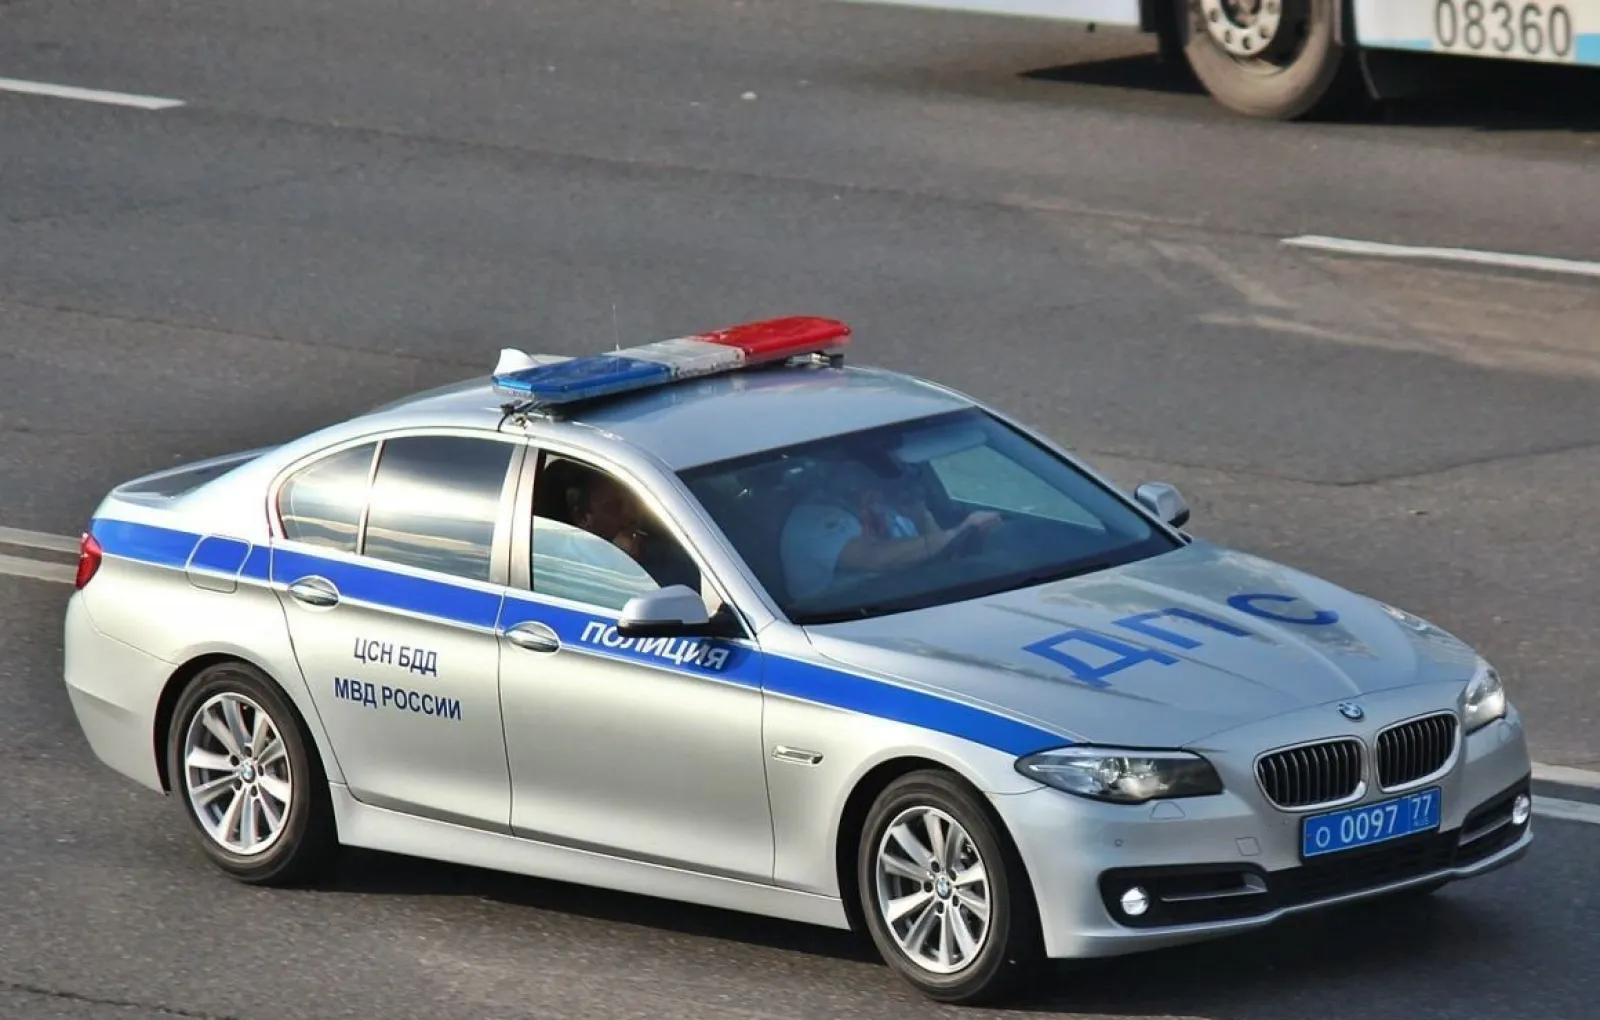 Инспектор ДПС насмерть сбил женщину под Нижним Новгородом